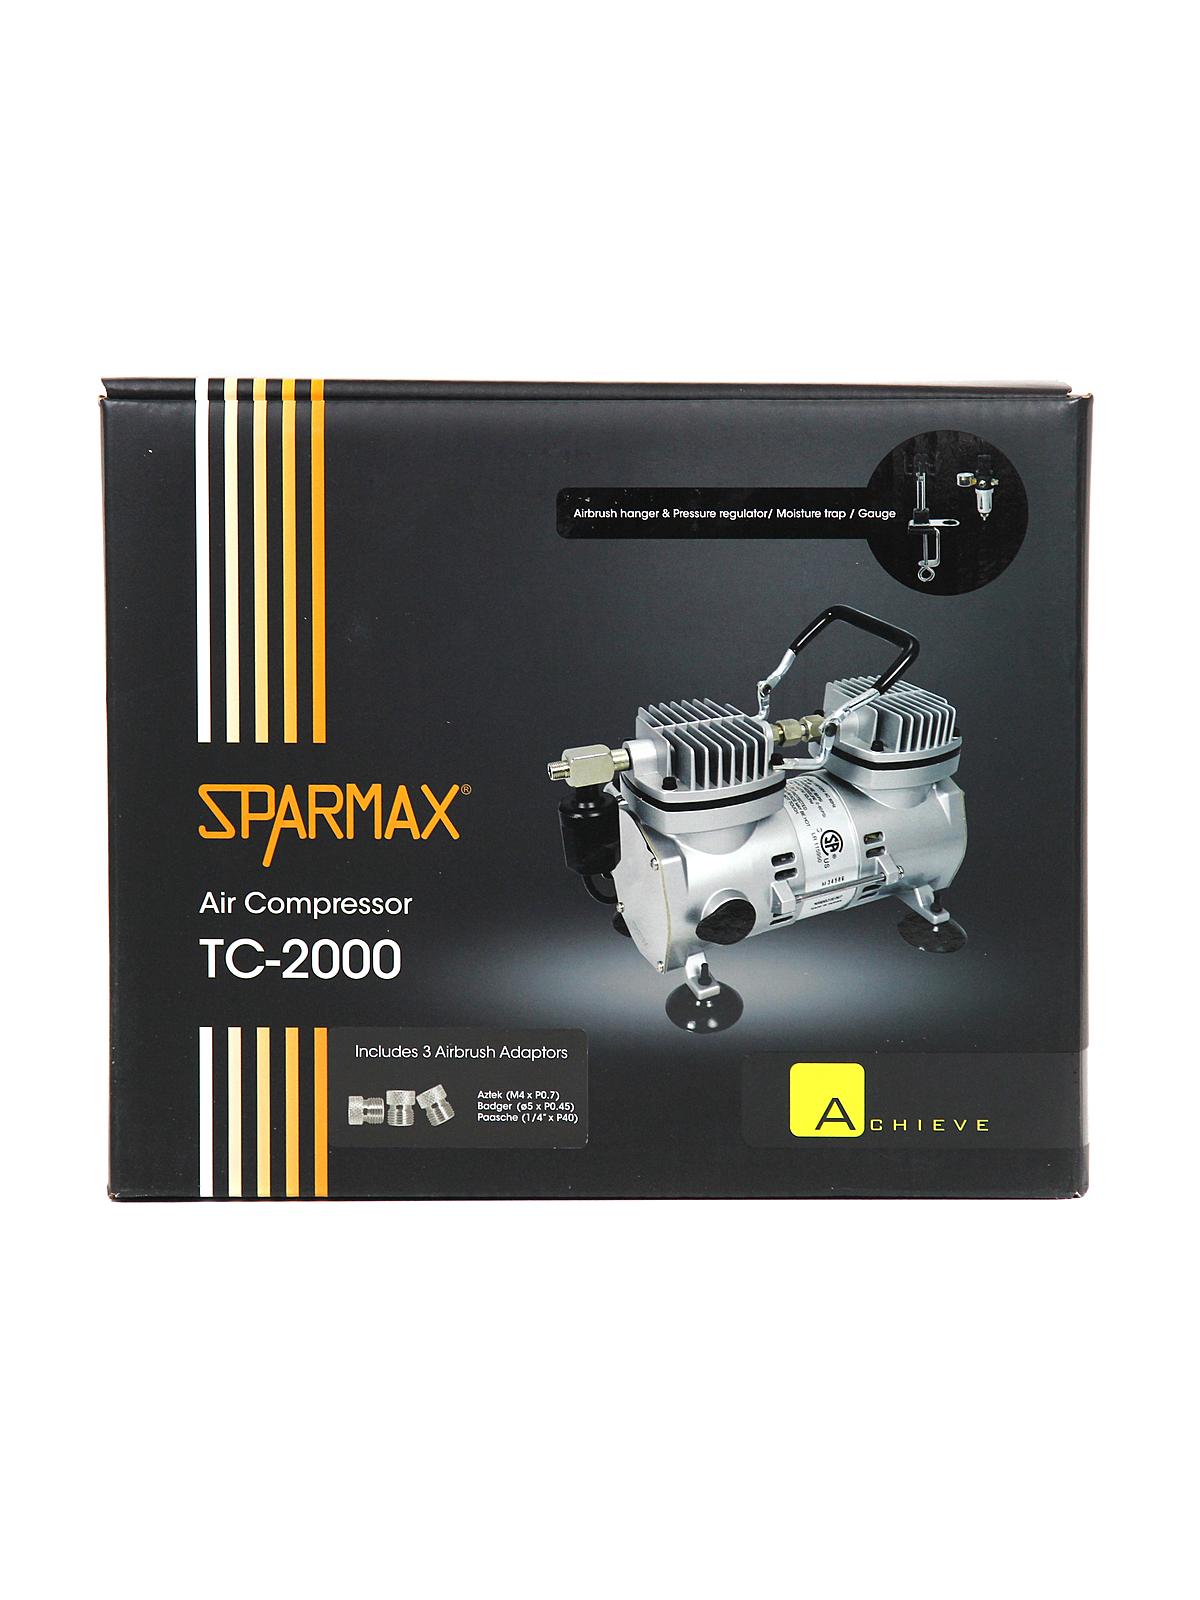 Sparmax TC-2000 Air Compressor